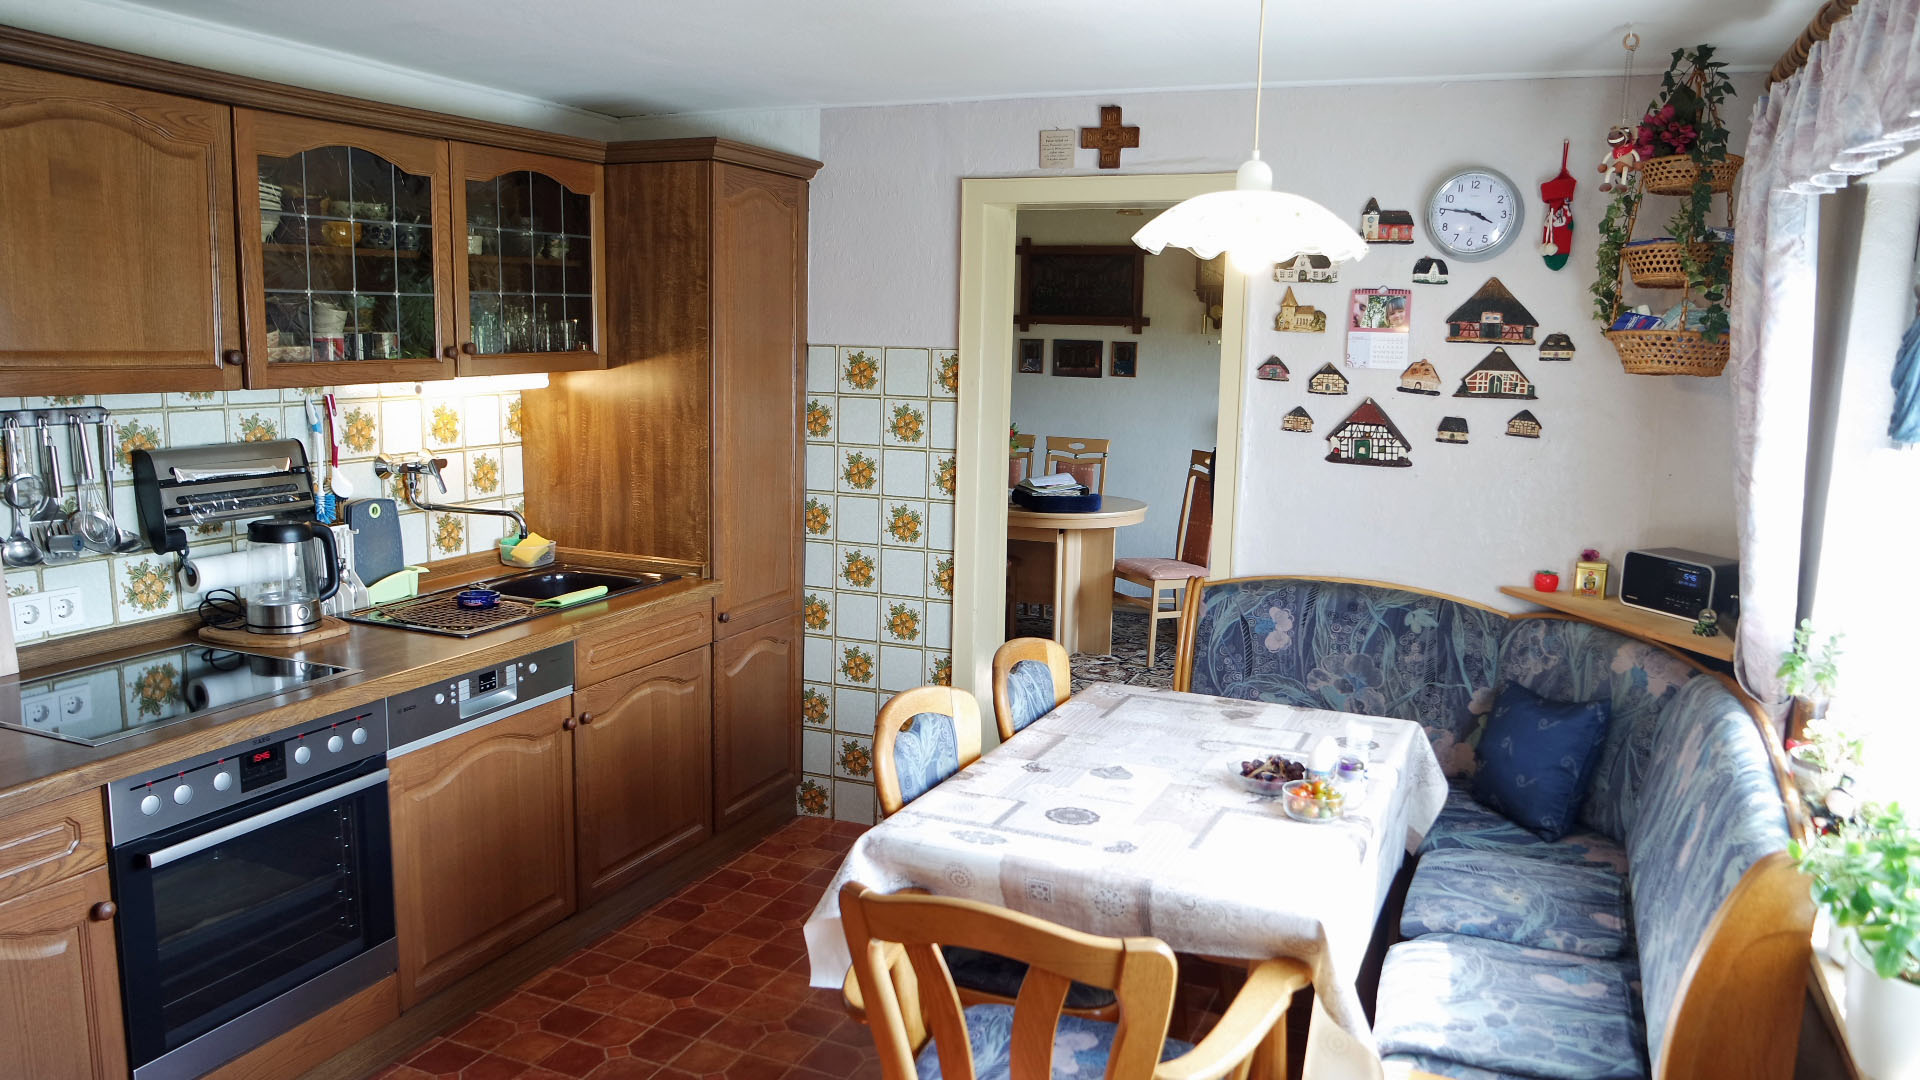 Verkauft: Einfamilienhaus mit Garage, gemütliche Küche (11,7 m²) mit angrenzendem...